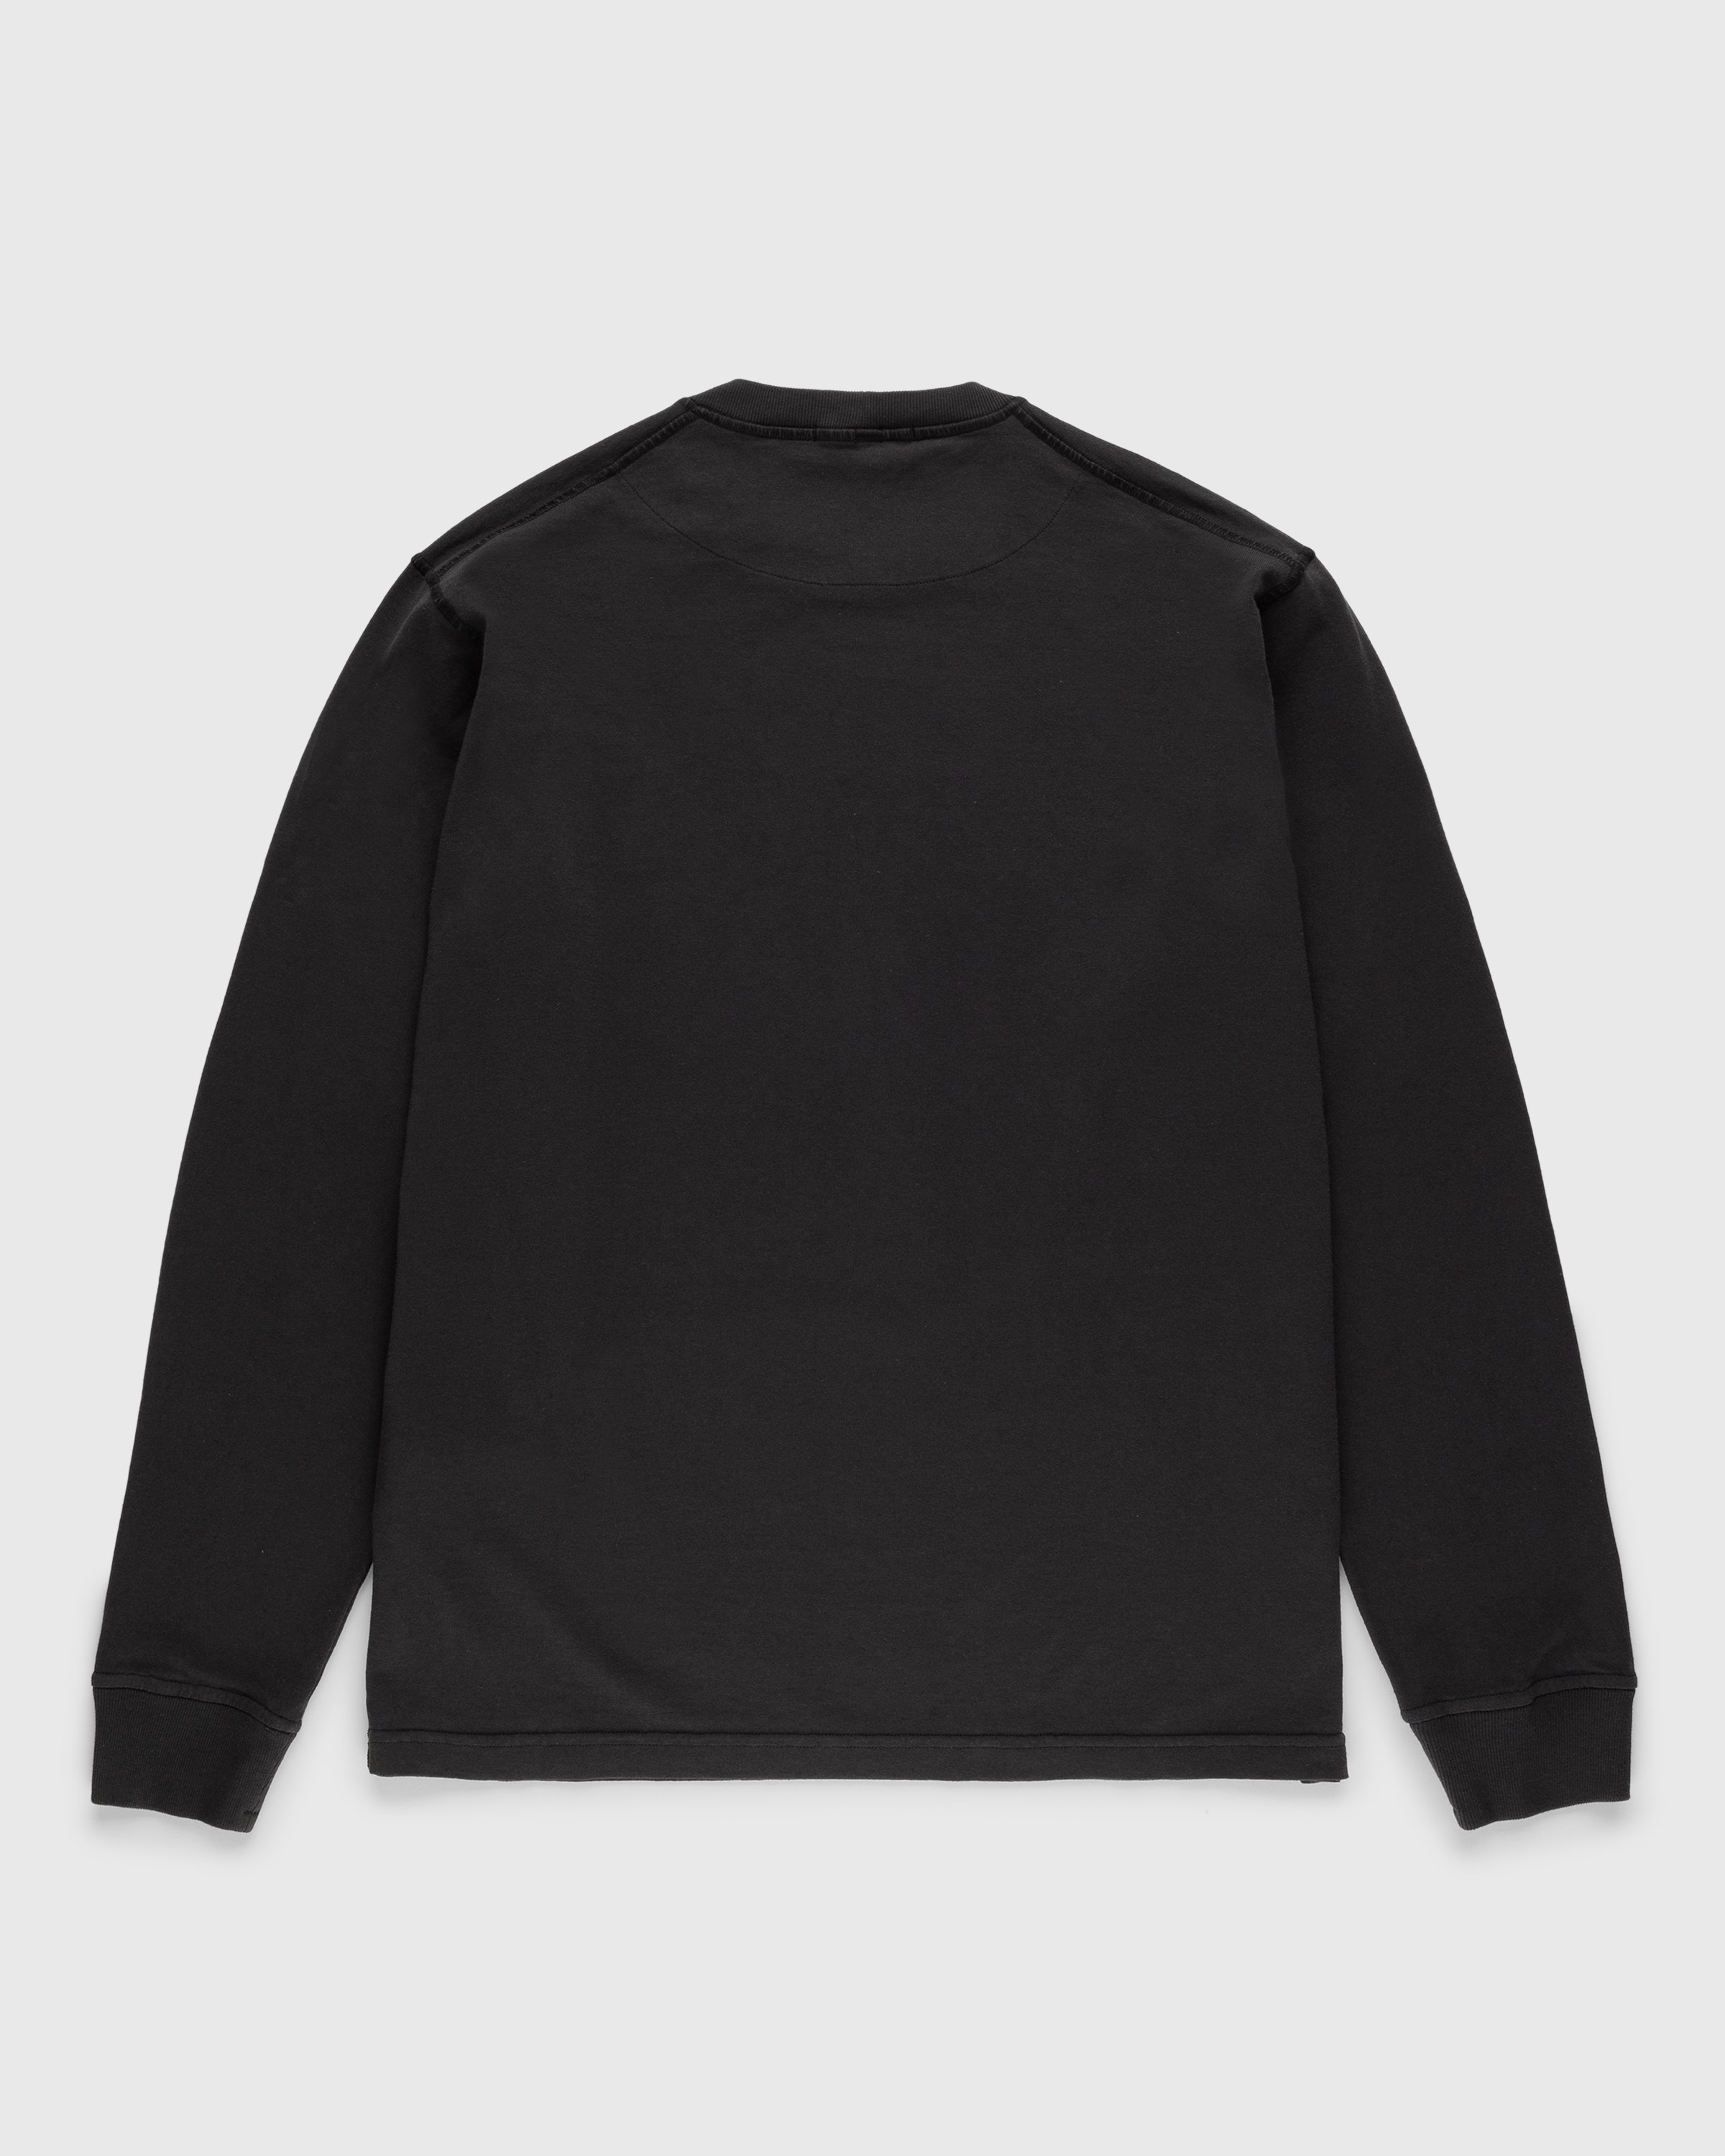 Stone Island - Fissato Longsleeve T-Shirt Charcoal - Clothing - Grey - Image 2